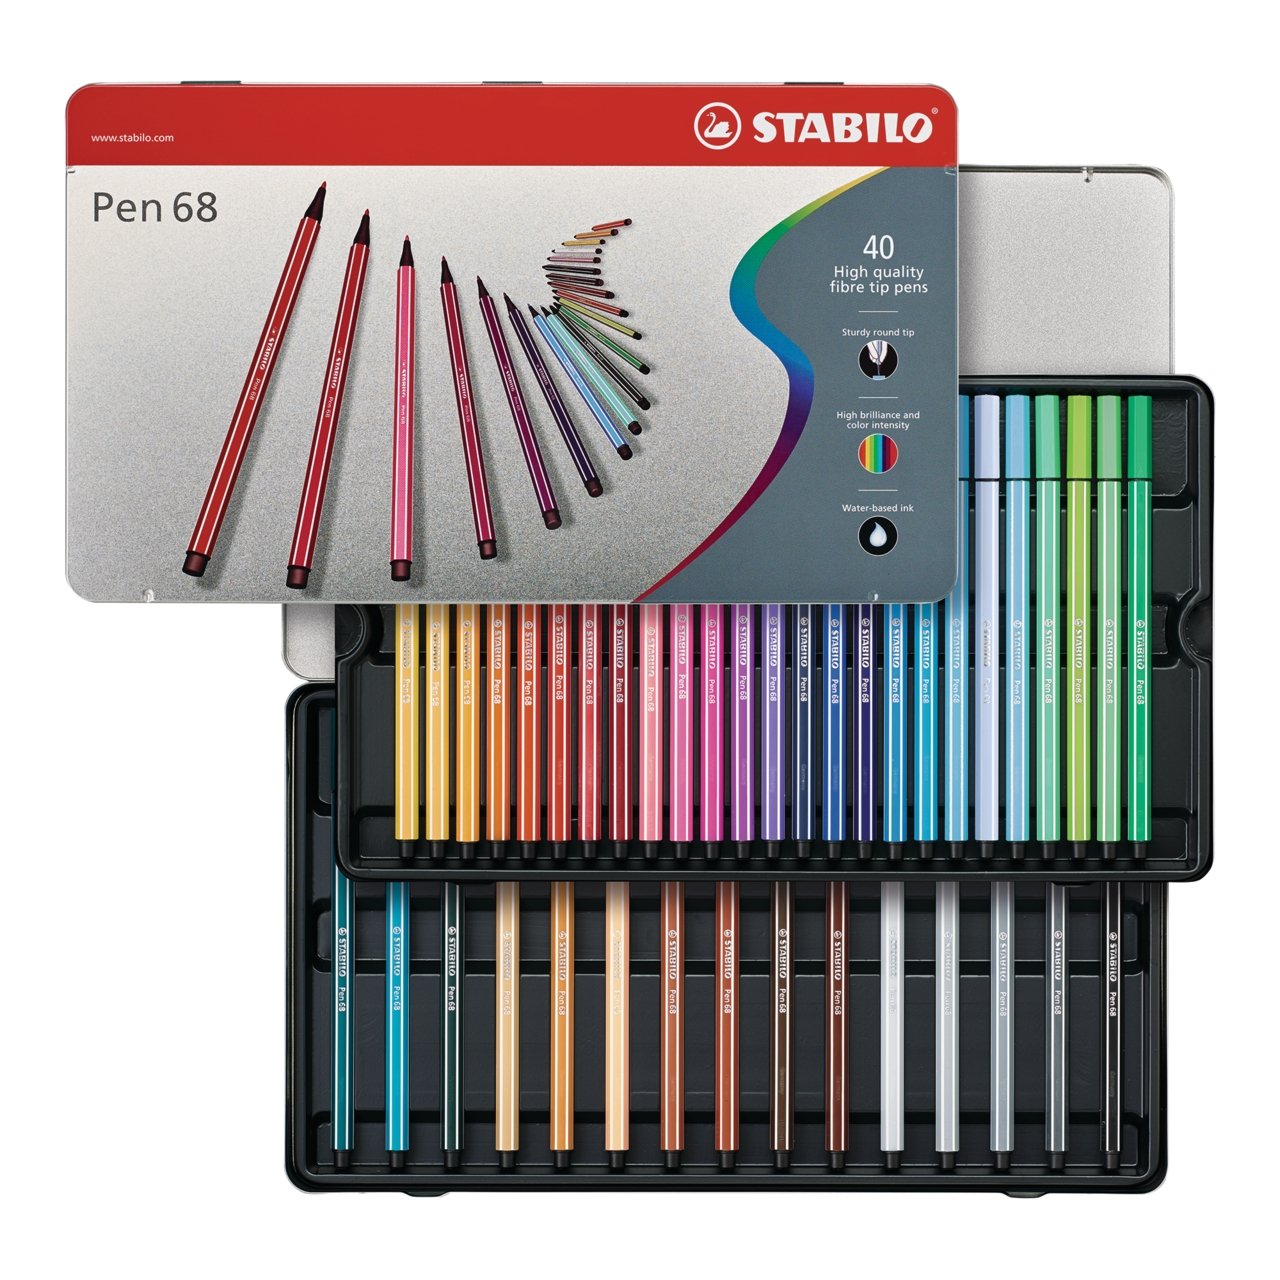 STABILO Pen 68 Wallet, 20-Color